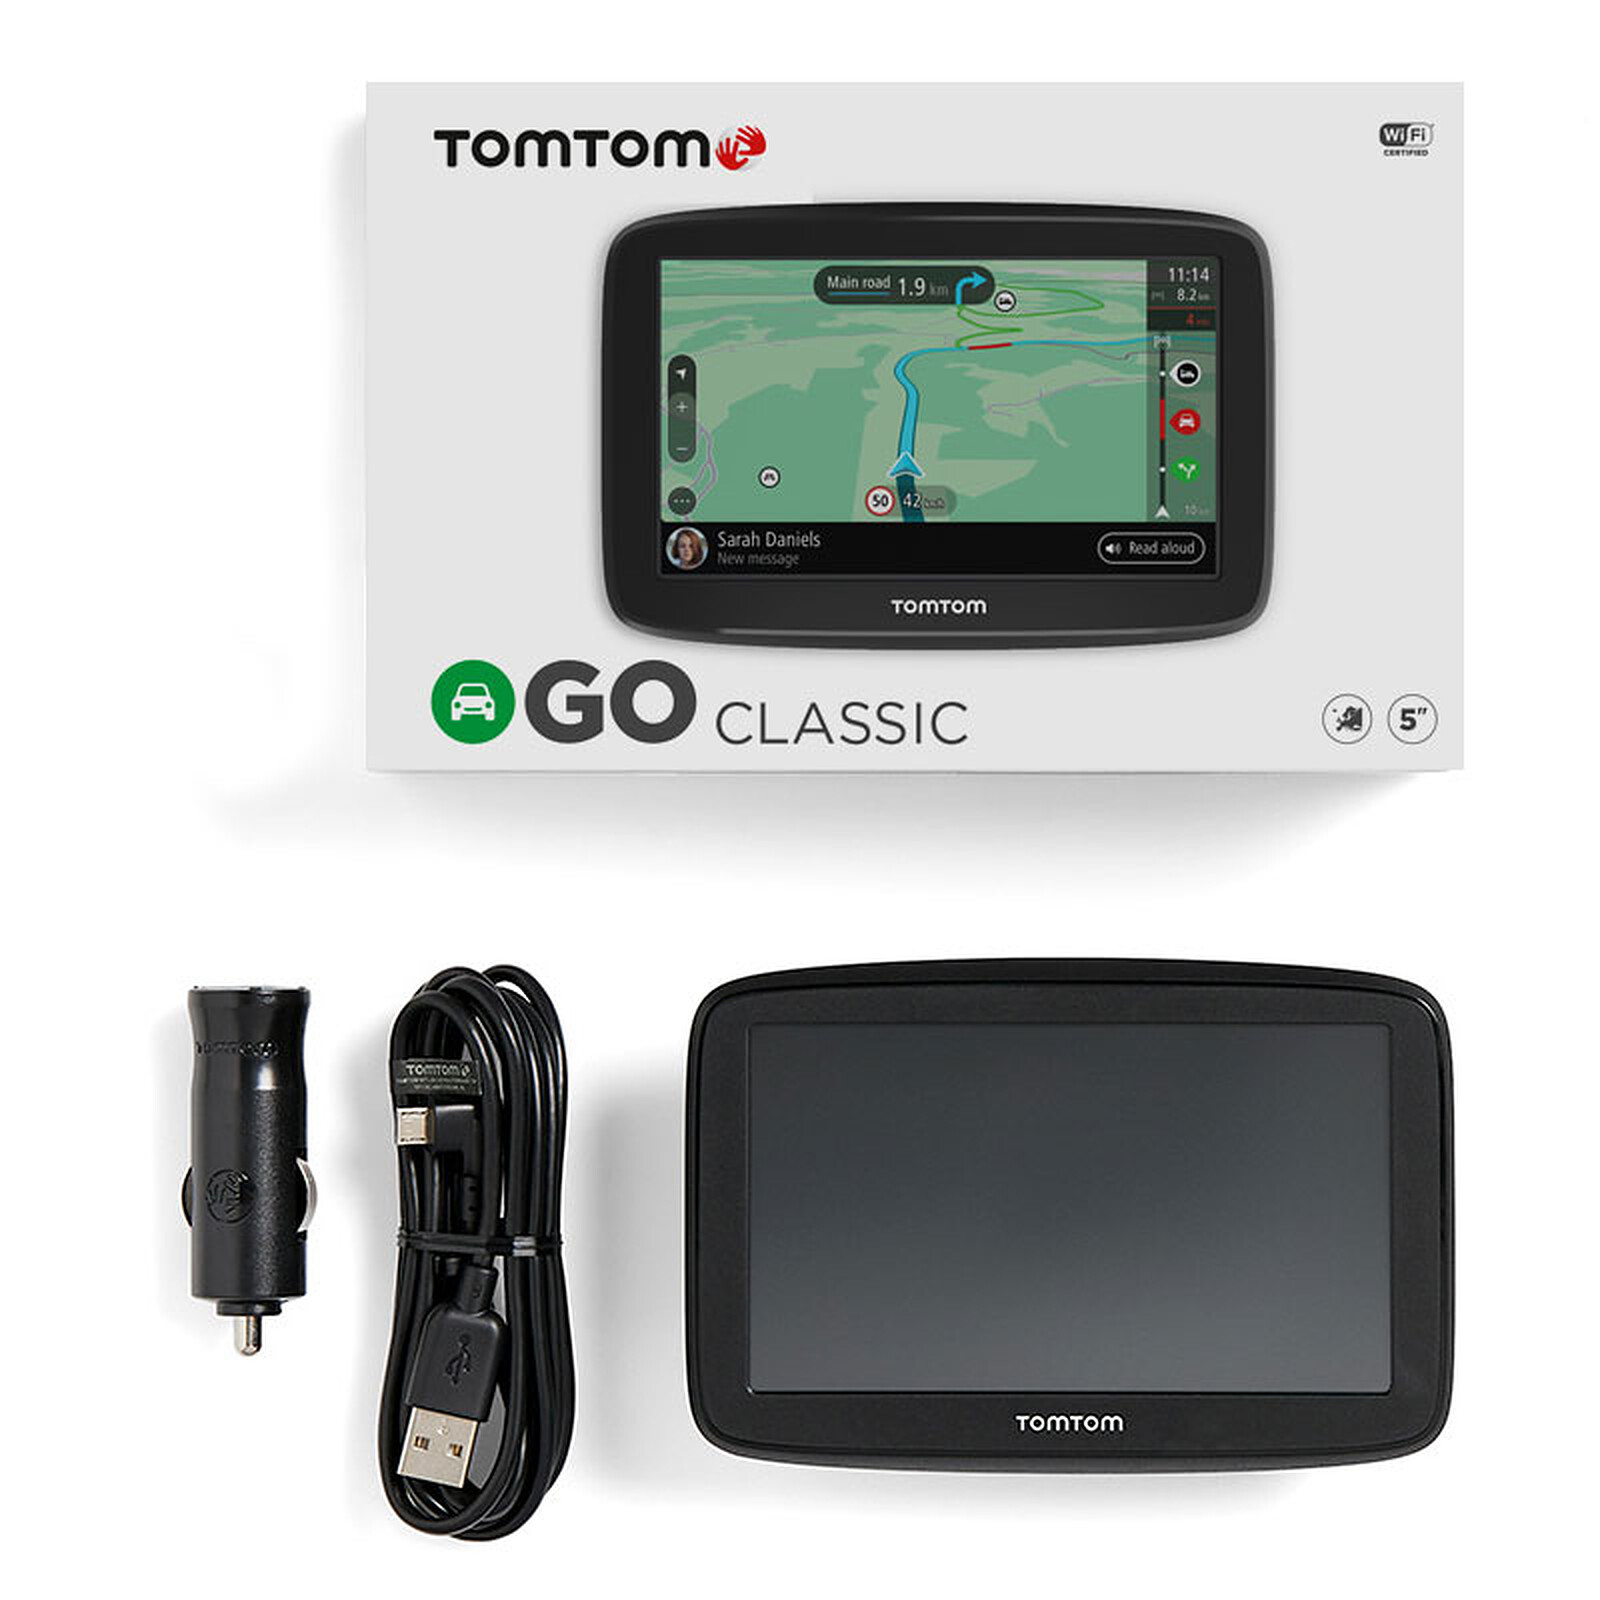 Aanbeveling Matron Moedig aan TomTom GO Classic (5") - GPS TomTom on LDLC